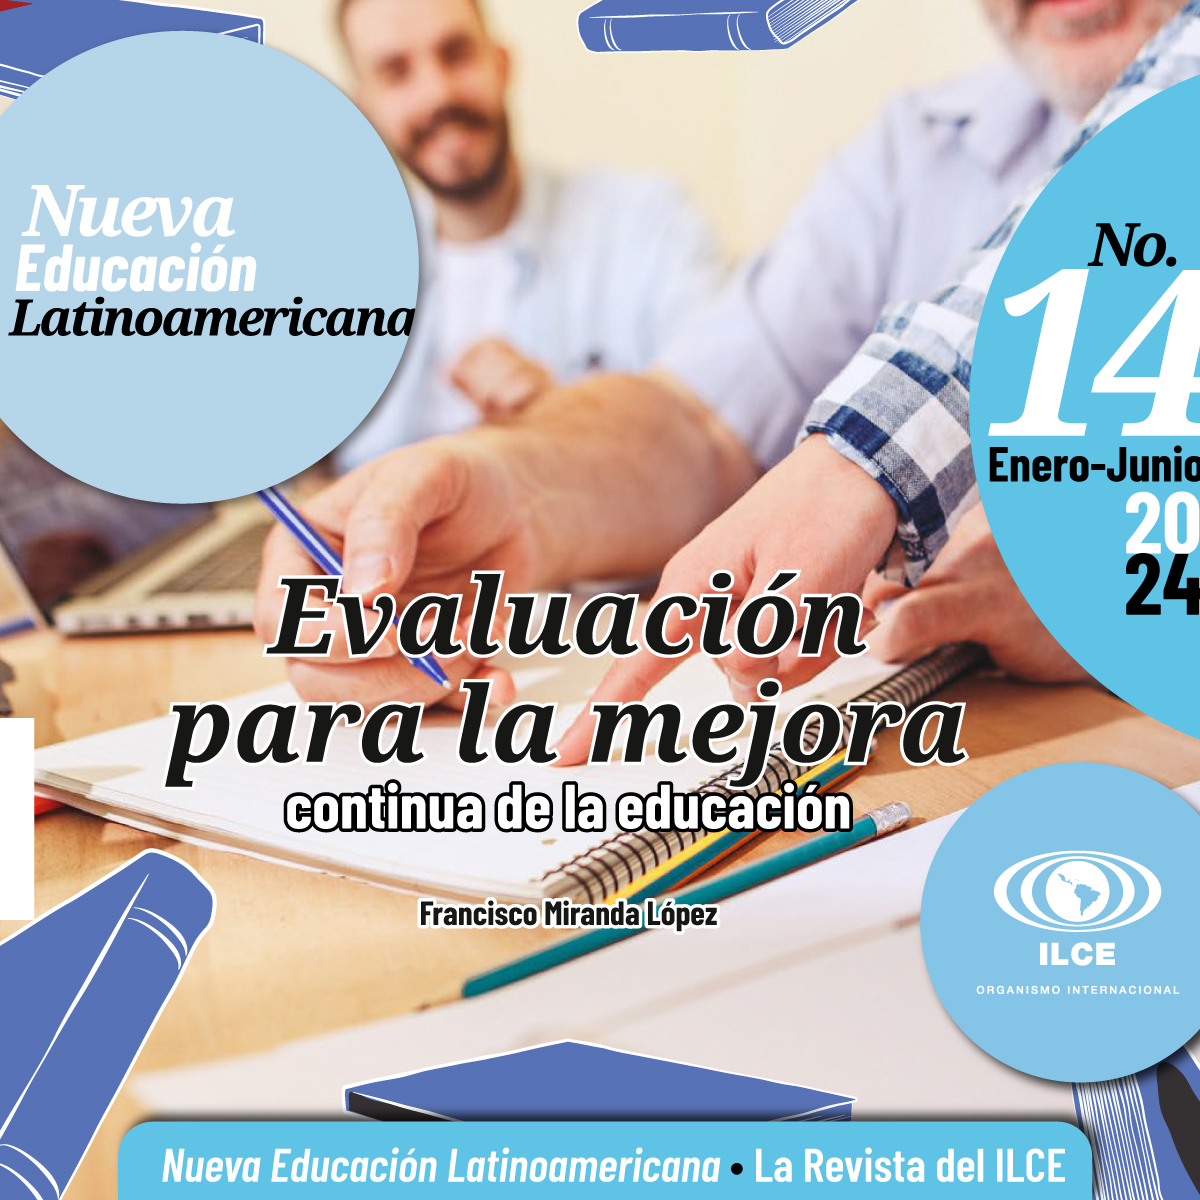 📚Francisco Miranda López presenta en la Revista Nueva Educación Latinoamericana (RNEL) No. 14 un modelo de evaluación diagnóstica, formativa e integral. Una herramienta clave para impulsar la mejora continua de la educación @MejoreduMX✍️ Acompáñanos 🙂👉bit.ly/3SjTKVg